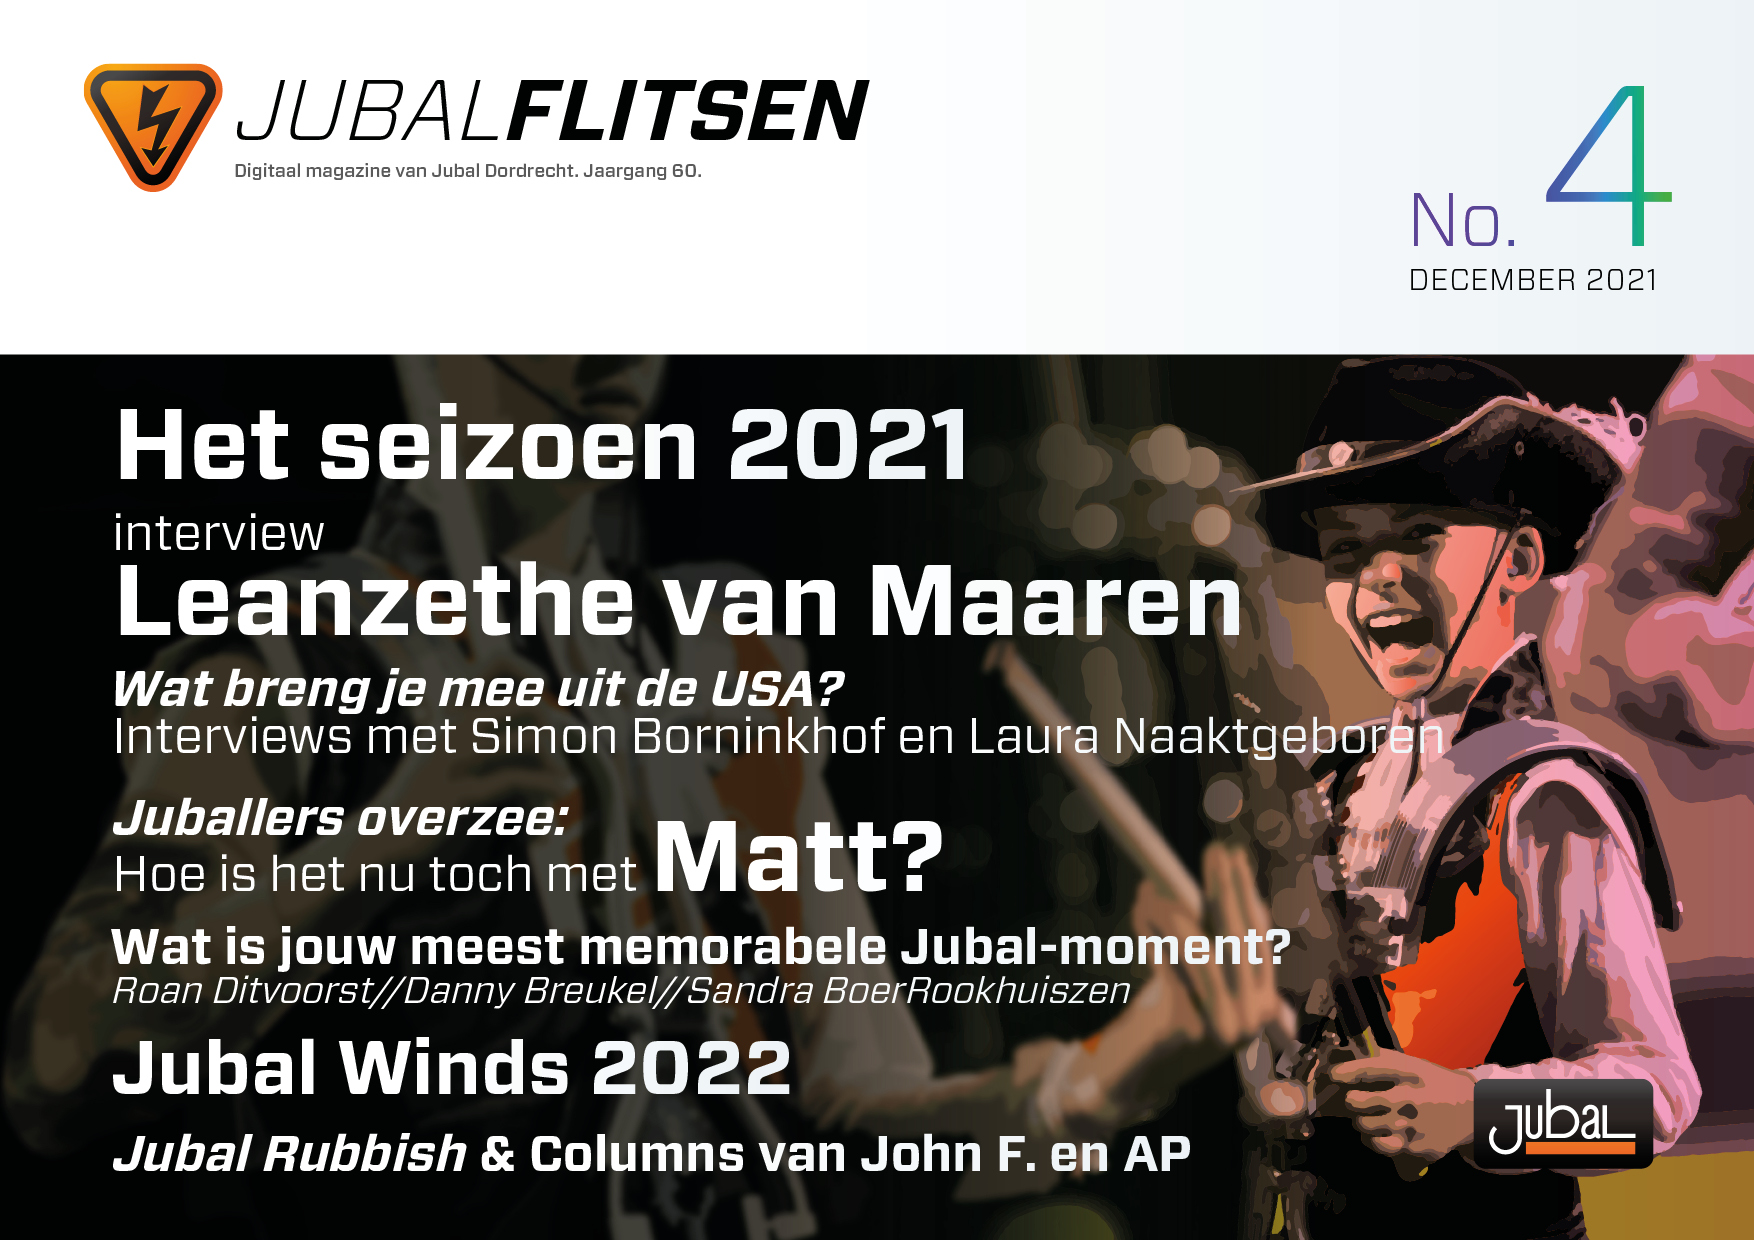 Jubal Flitsen 2021 No. 4 - December 2021